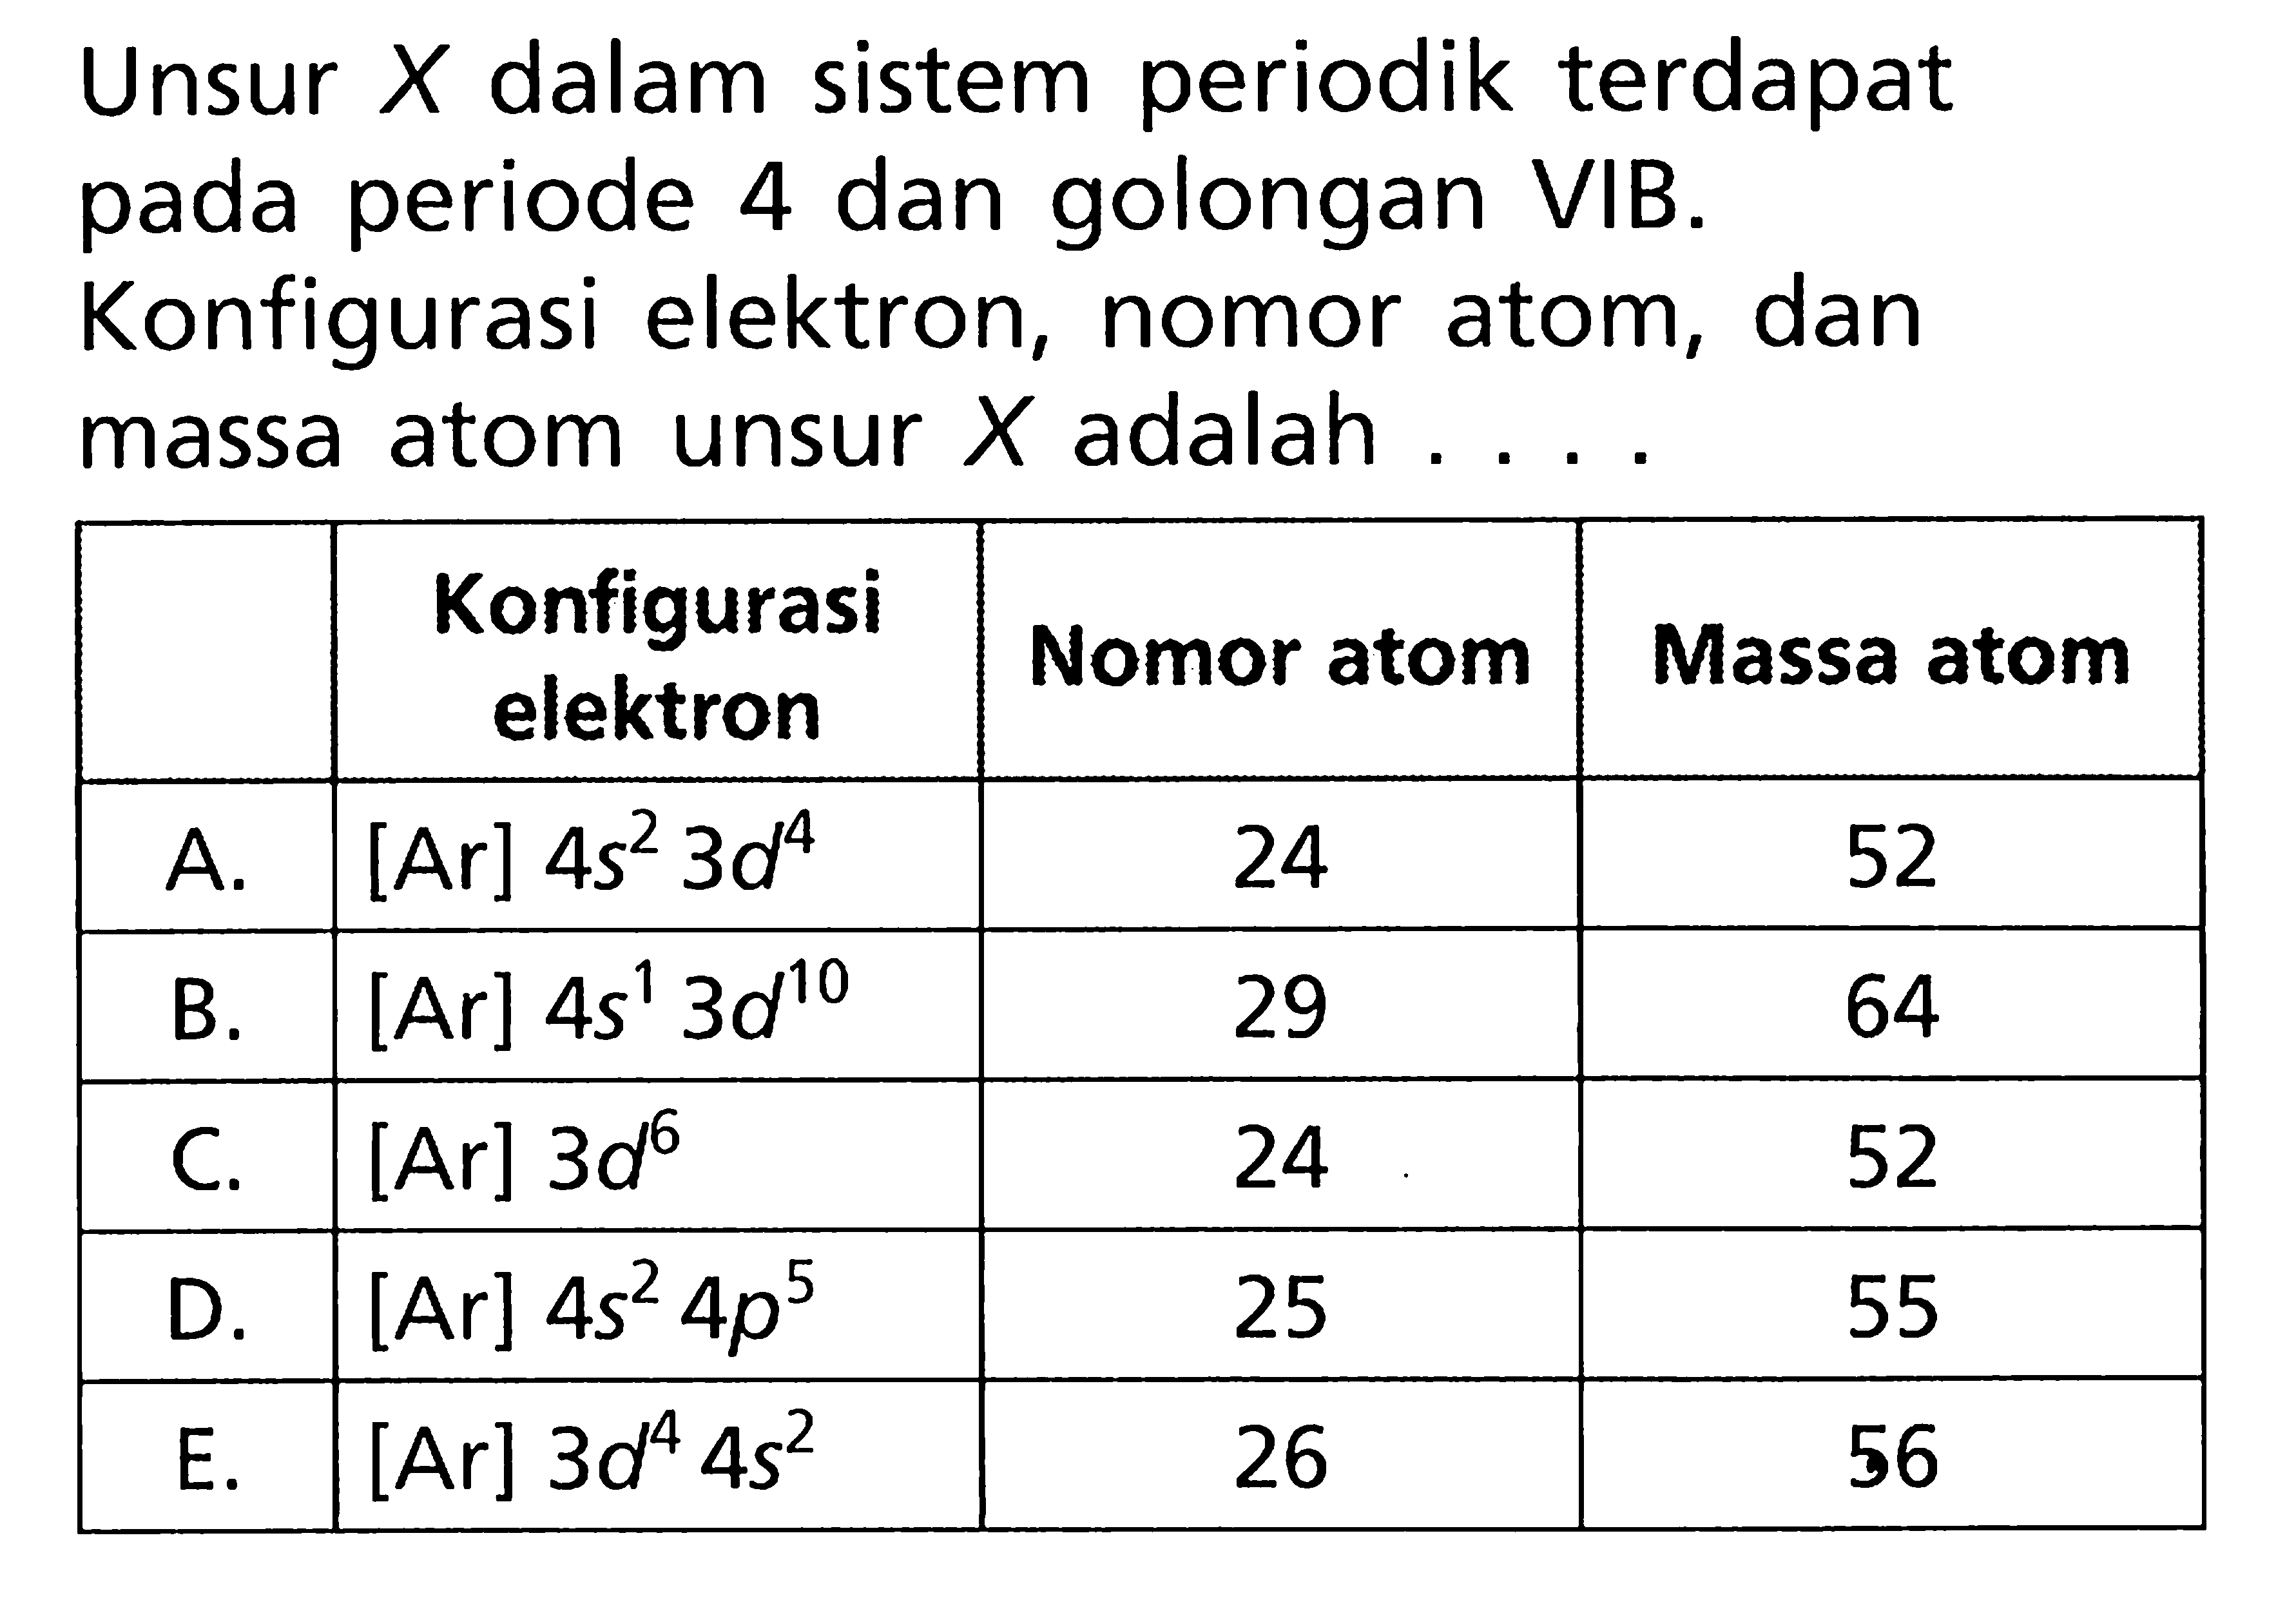 Unsur X dalam sistem periodik terdapat pada periode 4 dan golongan VIB. Konfigurasi elektron, nomor atom, dan massa atom unsur X adalah ...